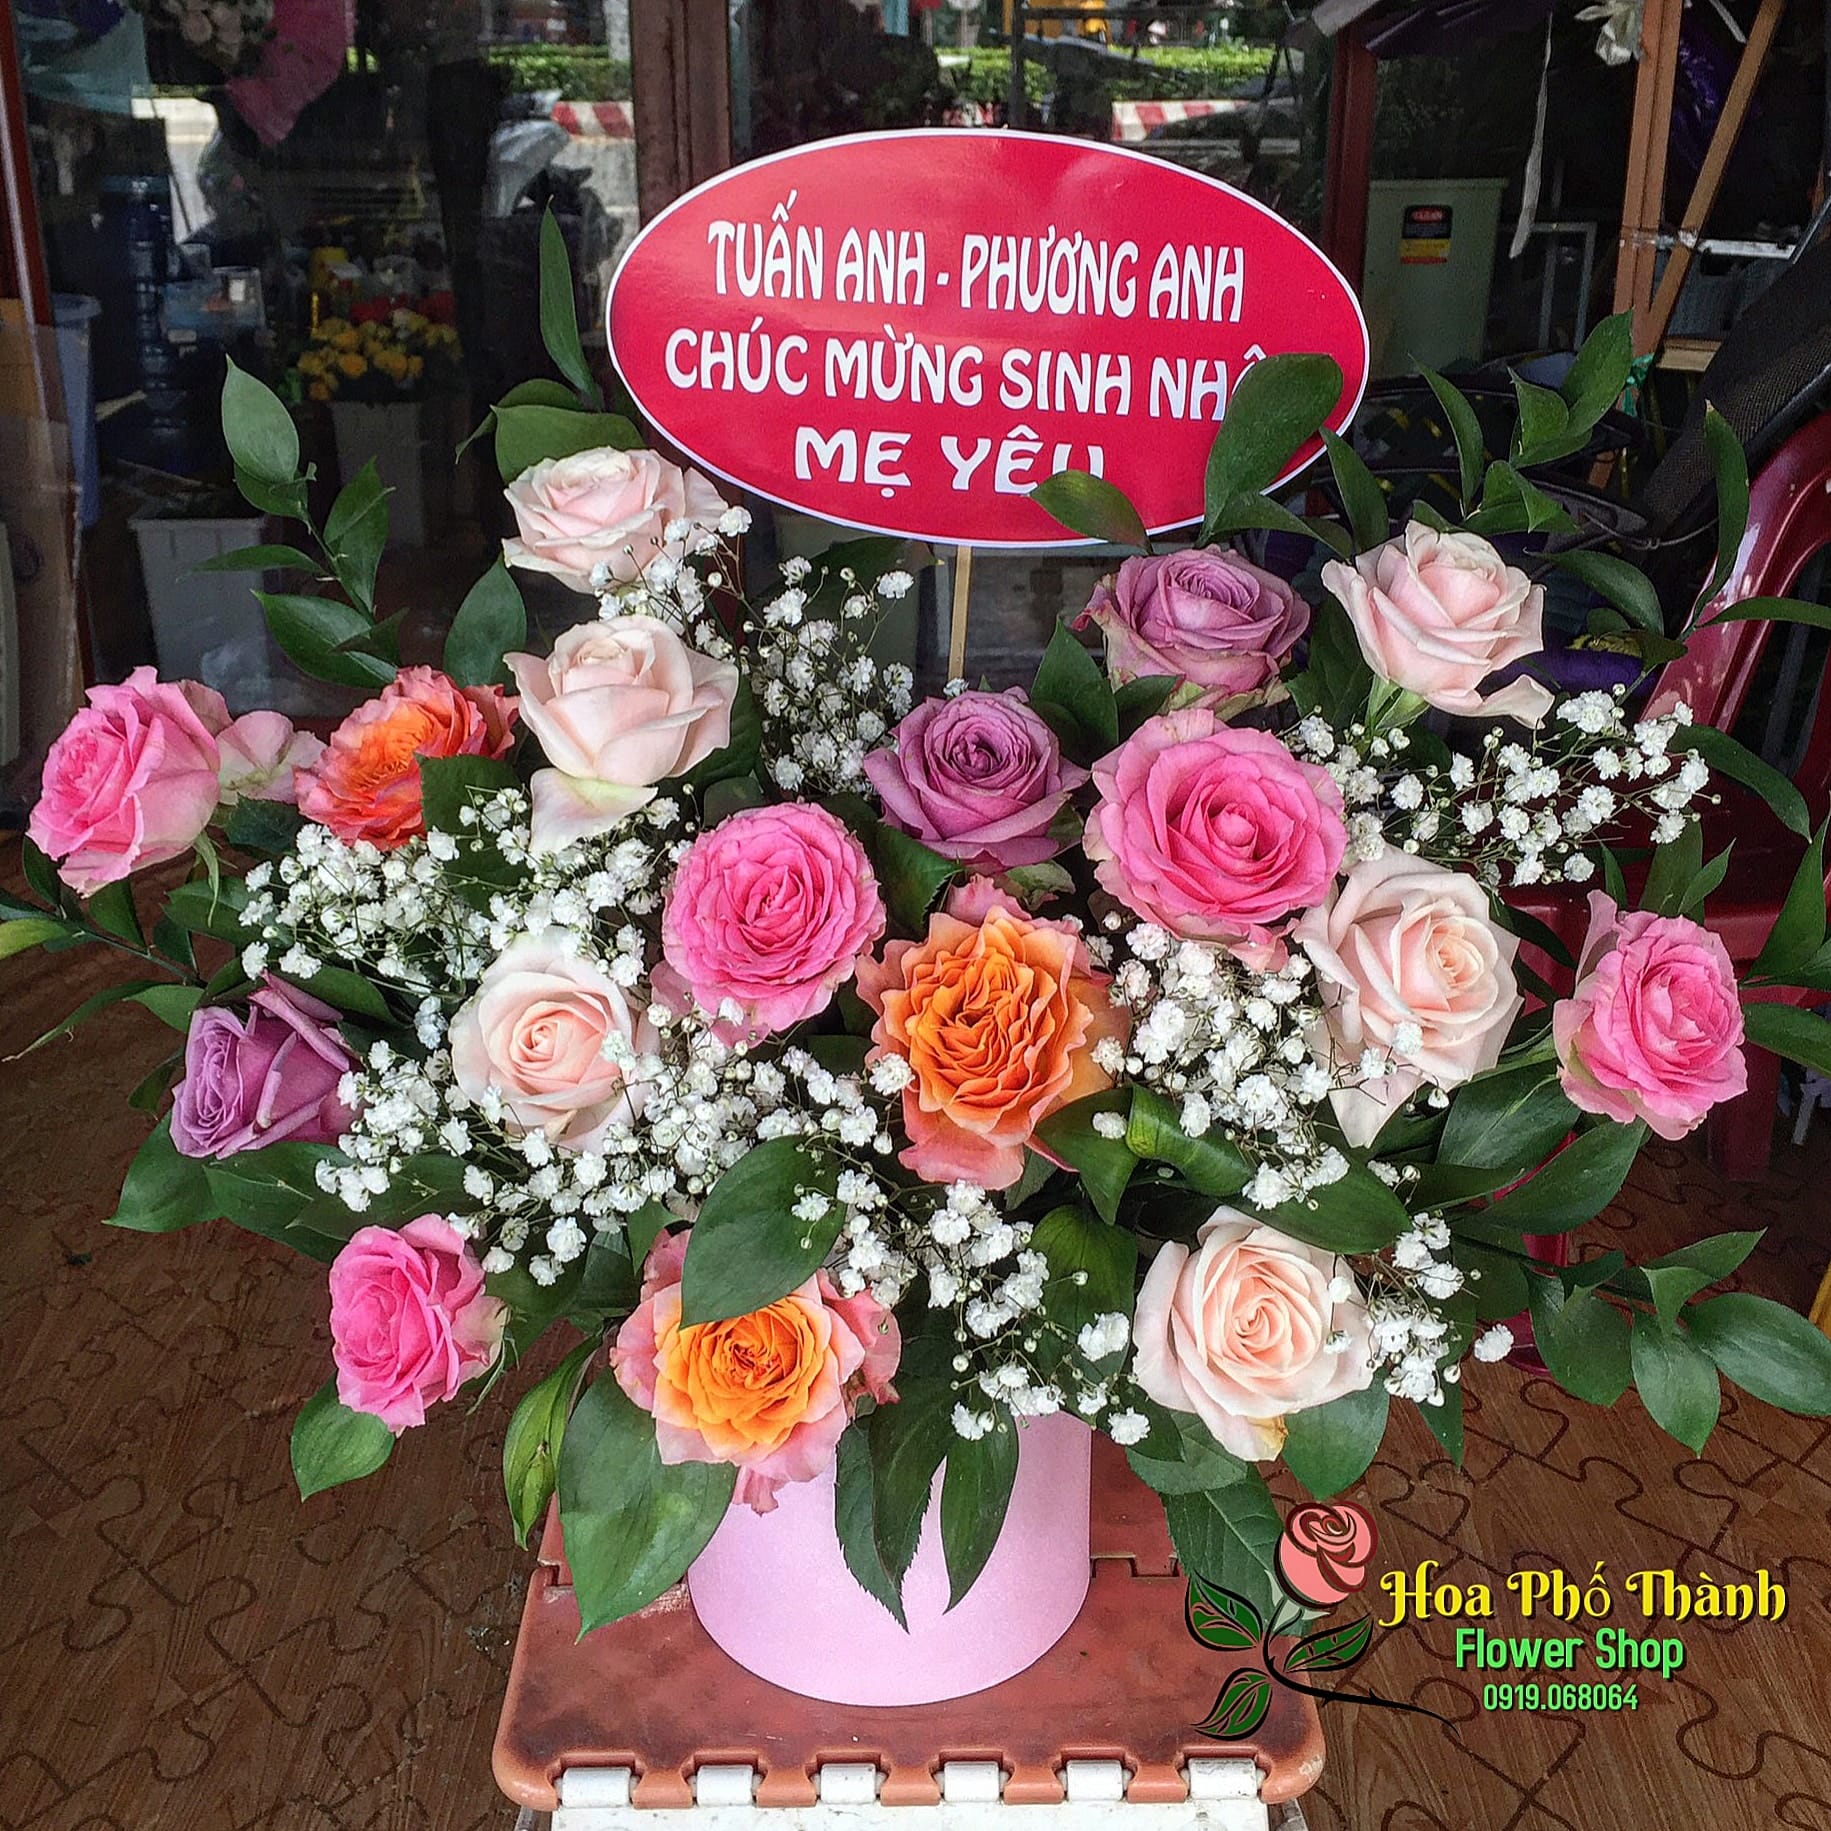 Một trong những mẫu giỏ hoa để chúc mừng khai trương hoàn hảo, chất lượng tại Hoa tươi Phố Thành Rạch Giá Kiên Giang